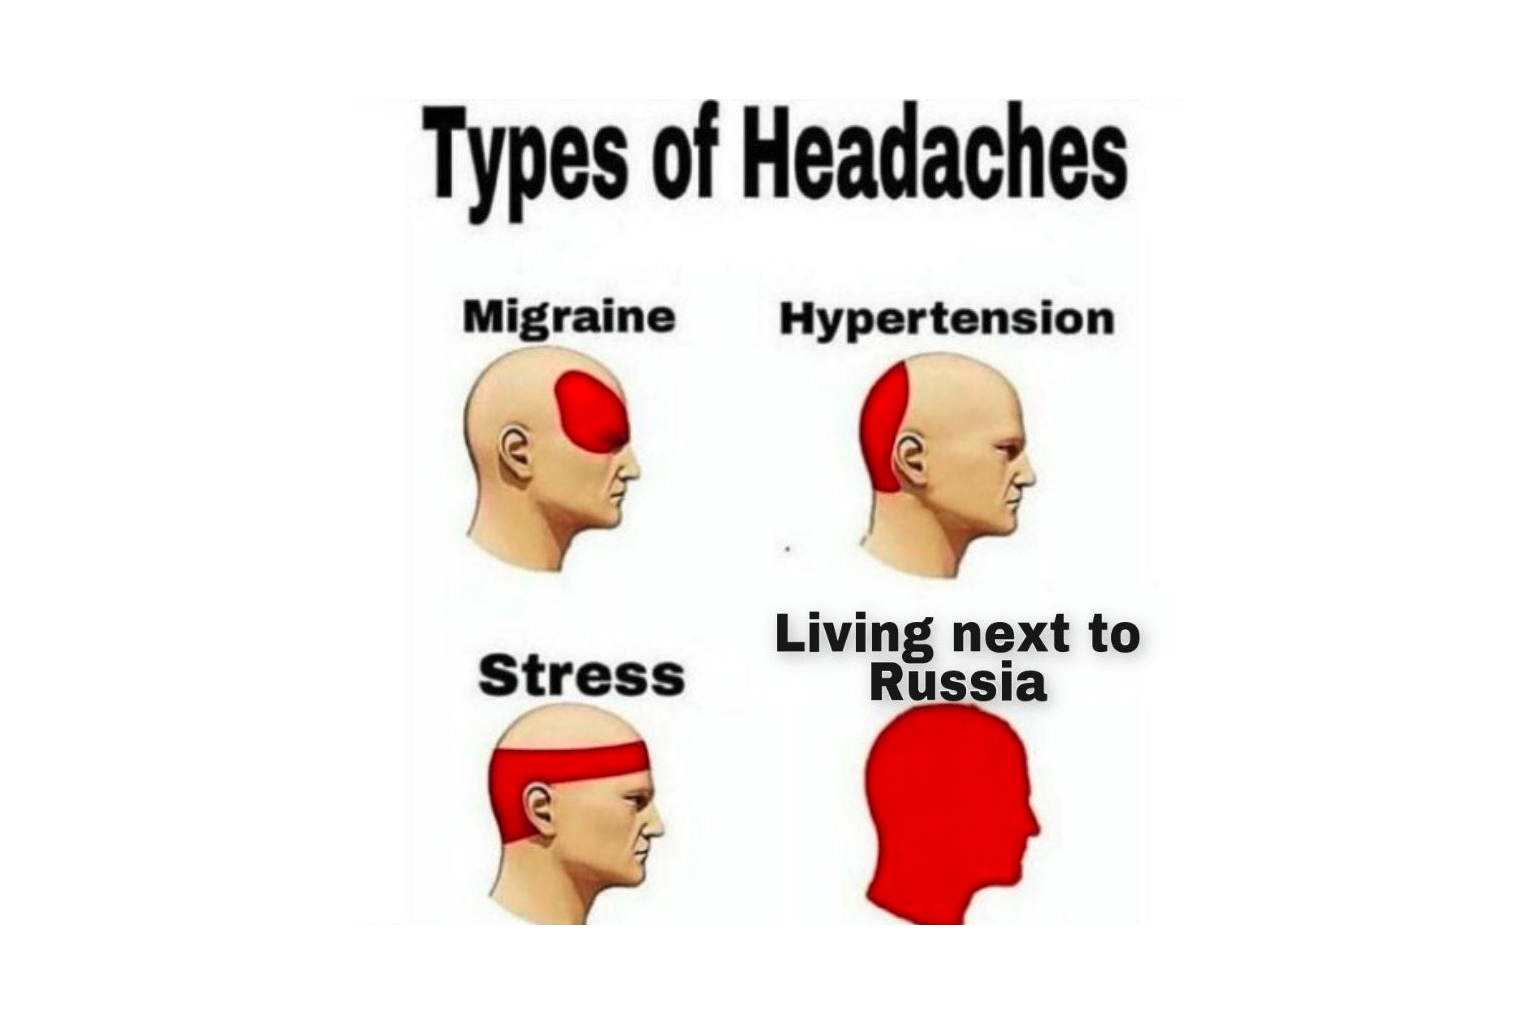 ukraine twitter account meme type of headaches